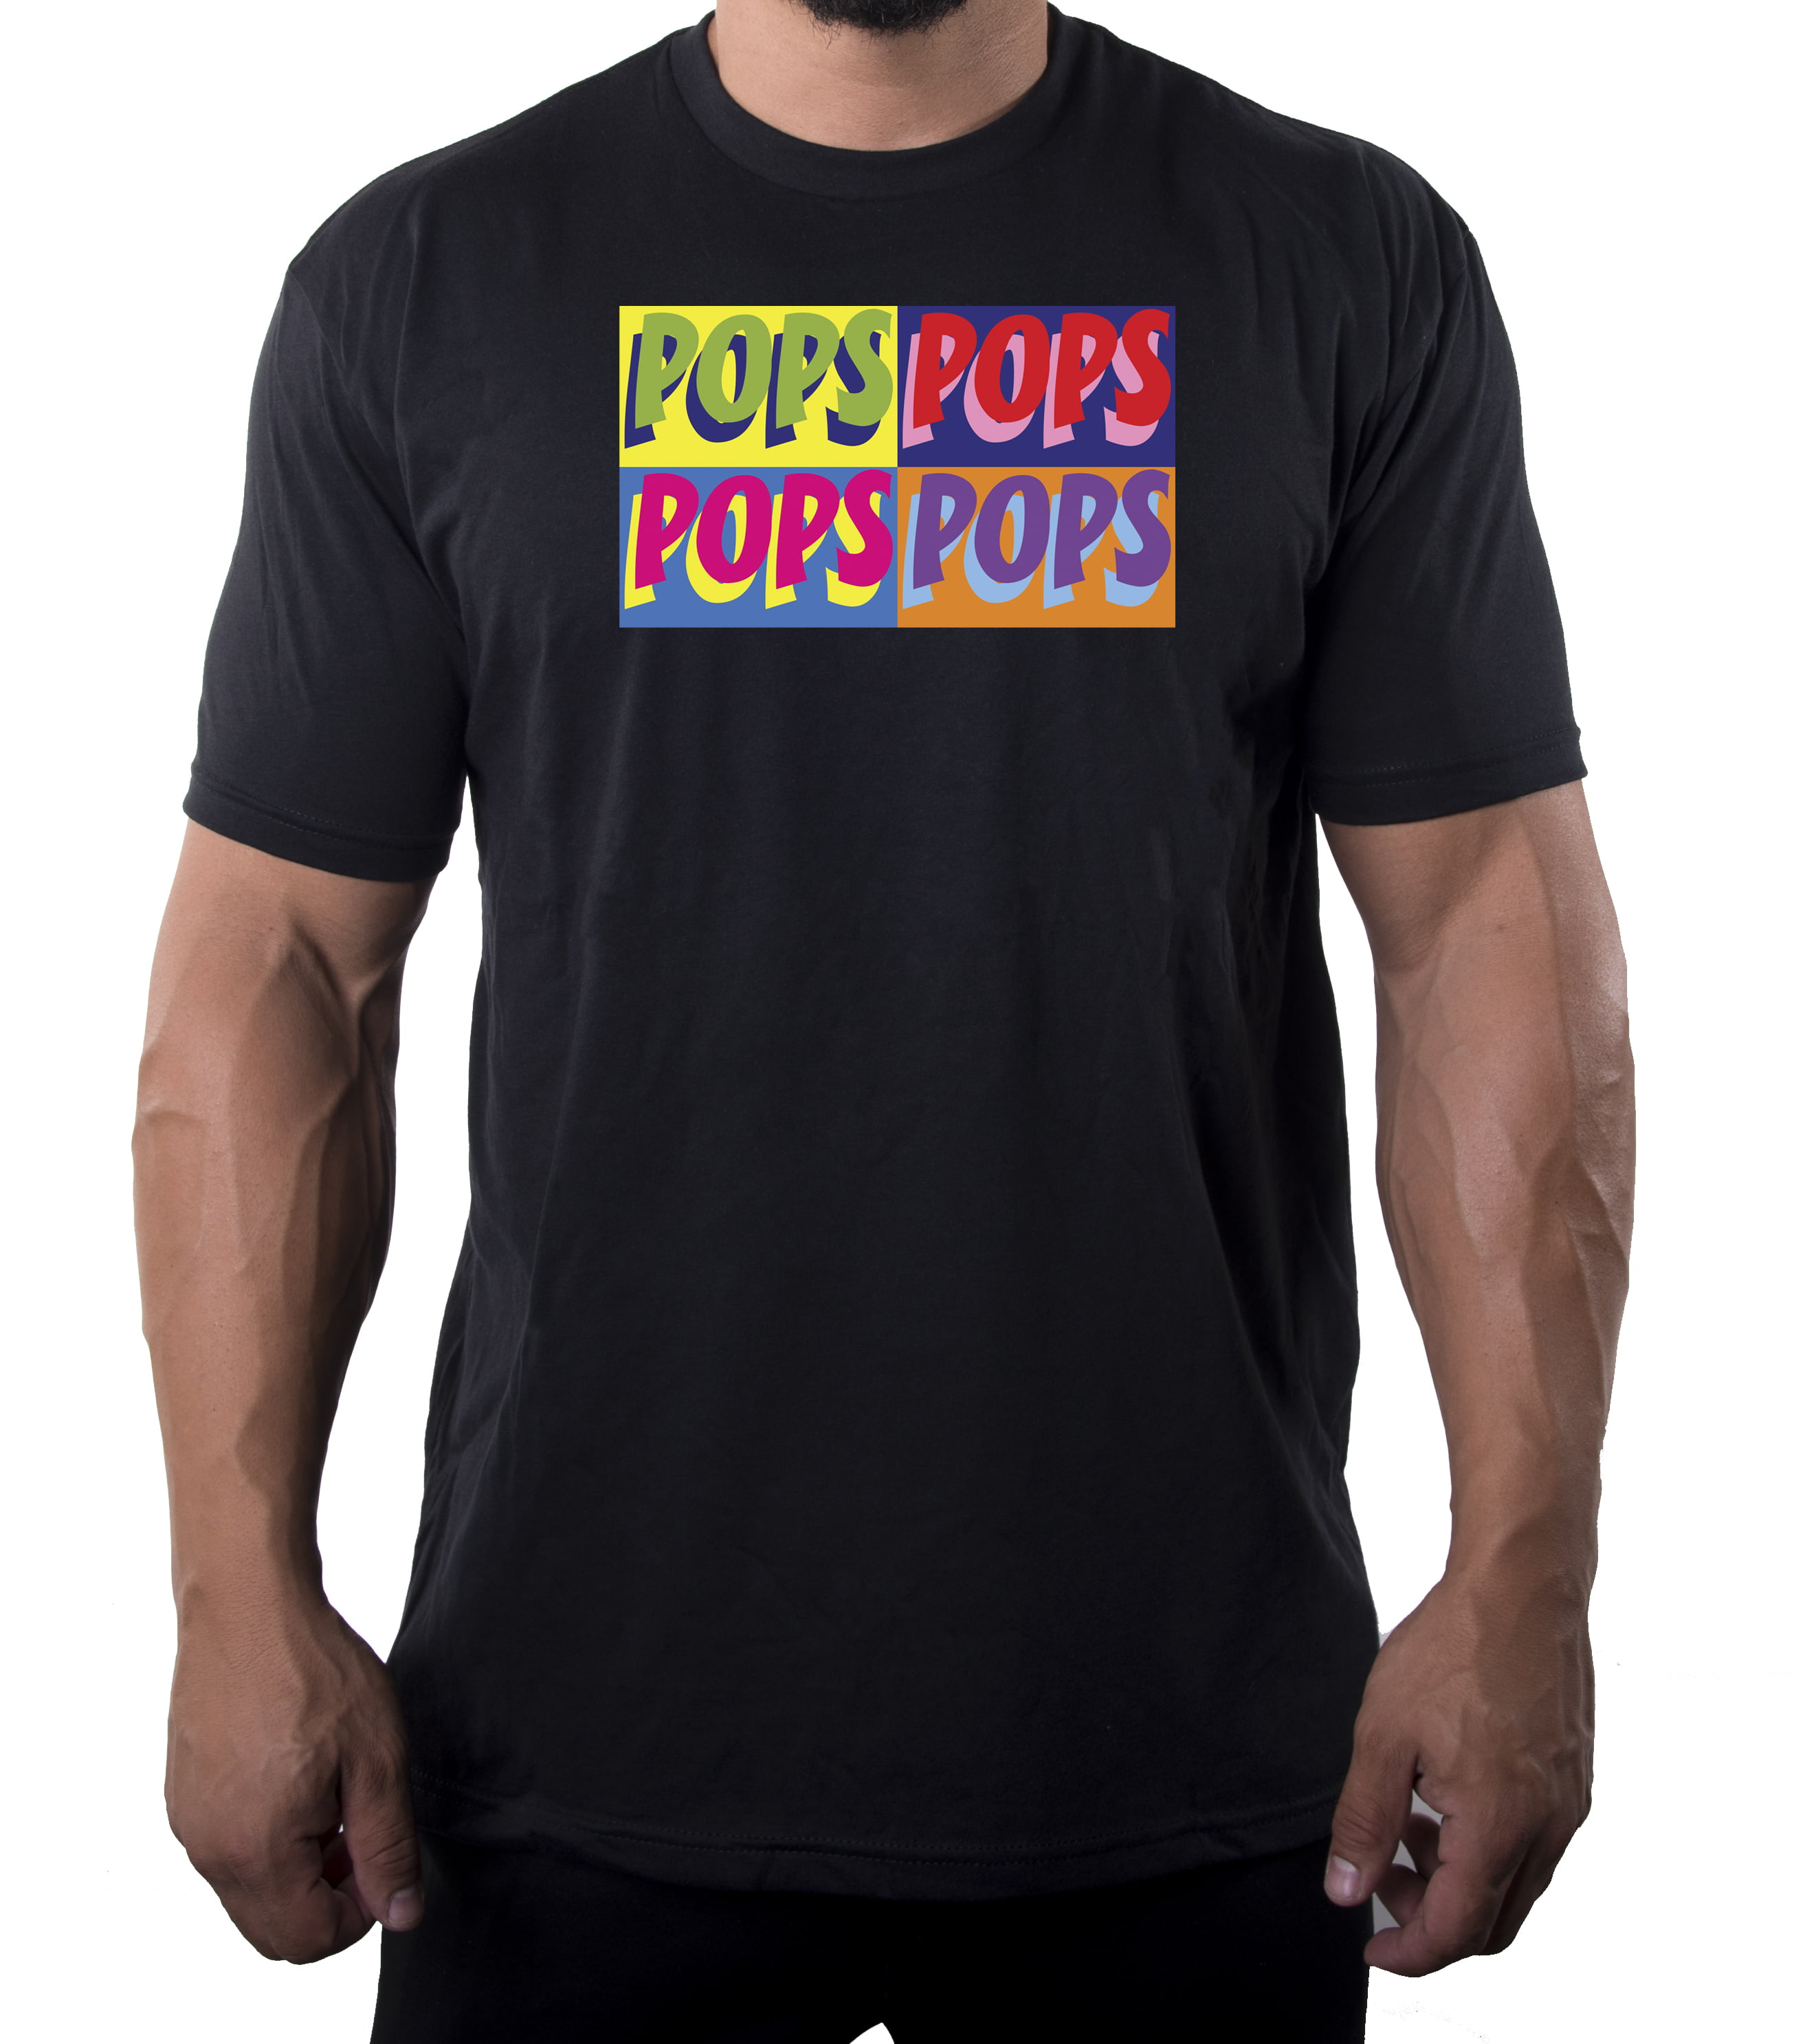 sektor sæt Menstruation Men's Pops tee shirt, Pop Culture T-Shirts, Cool Shirts for Dad - Black  MH200DAD S30 4XL - Walmart.com